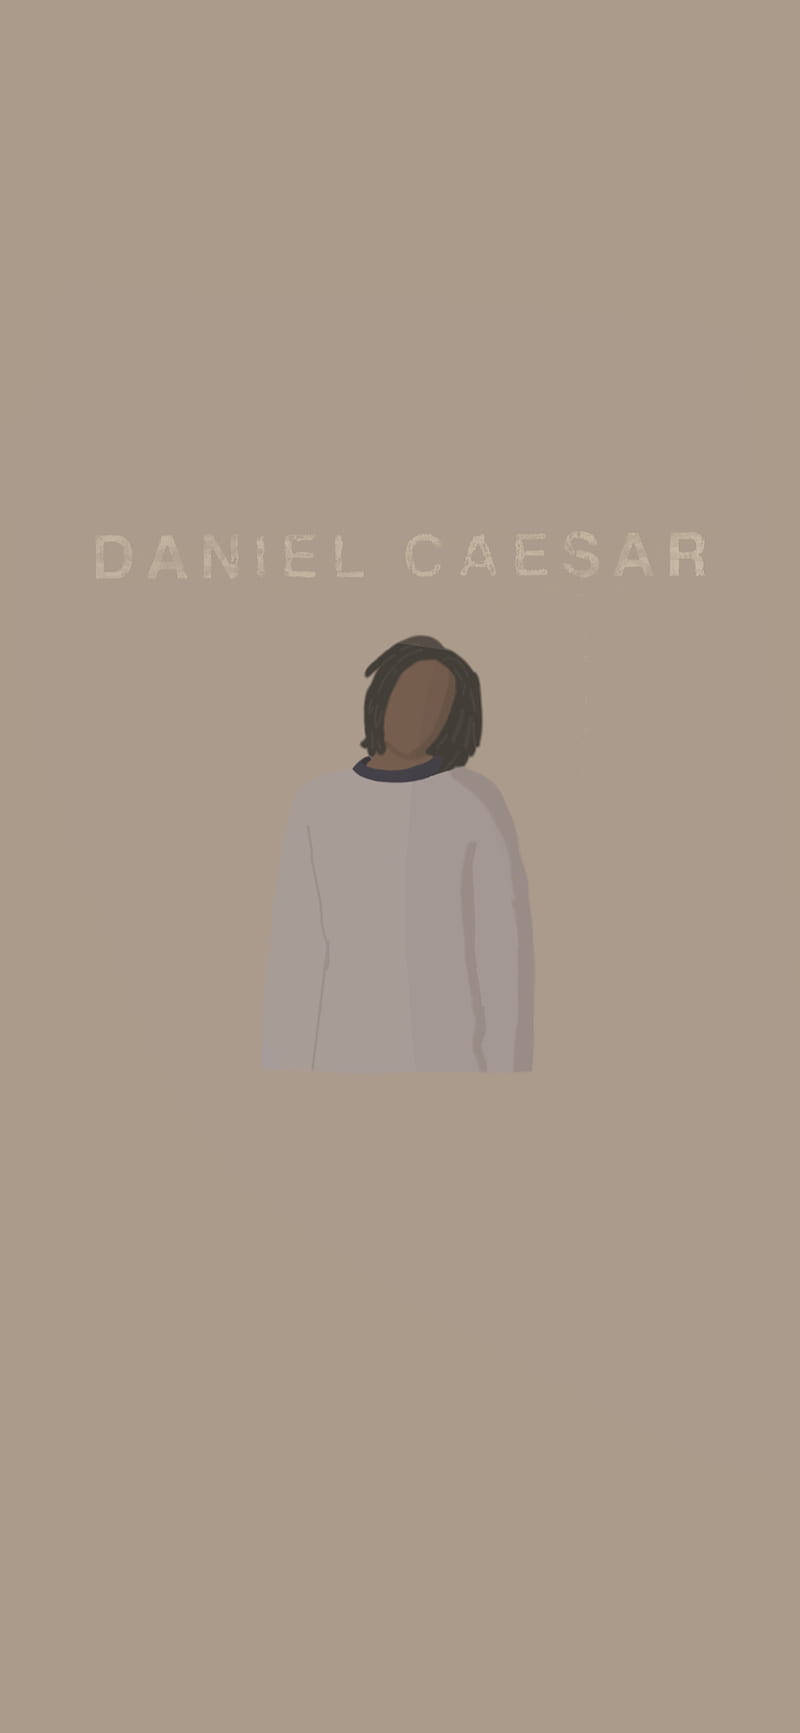 Daniel Caesar Minimalist Art Wallpaper